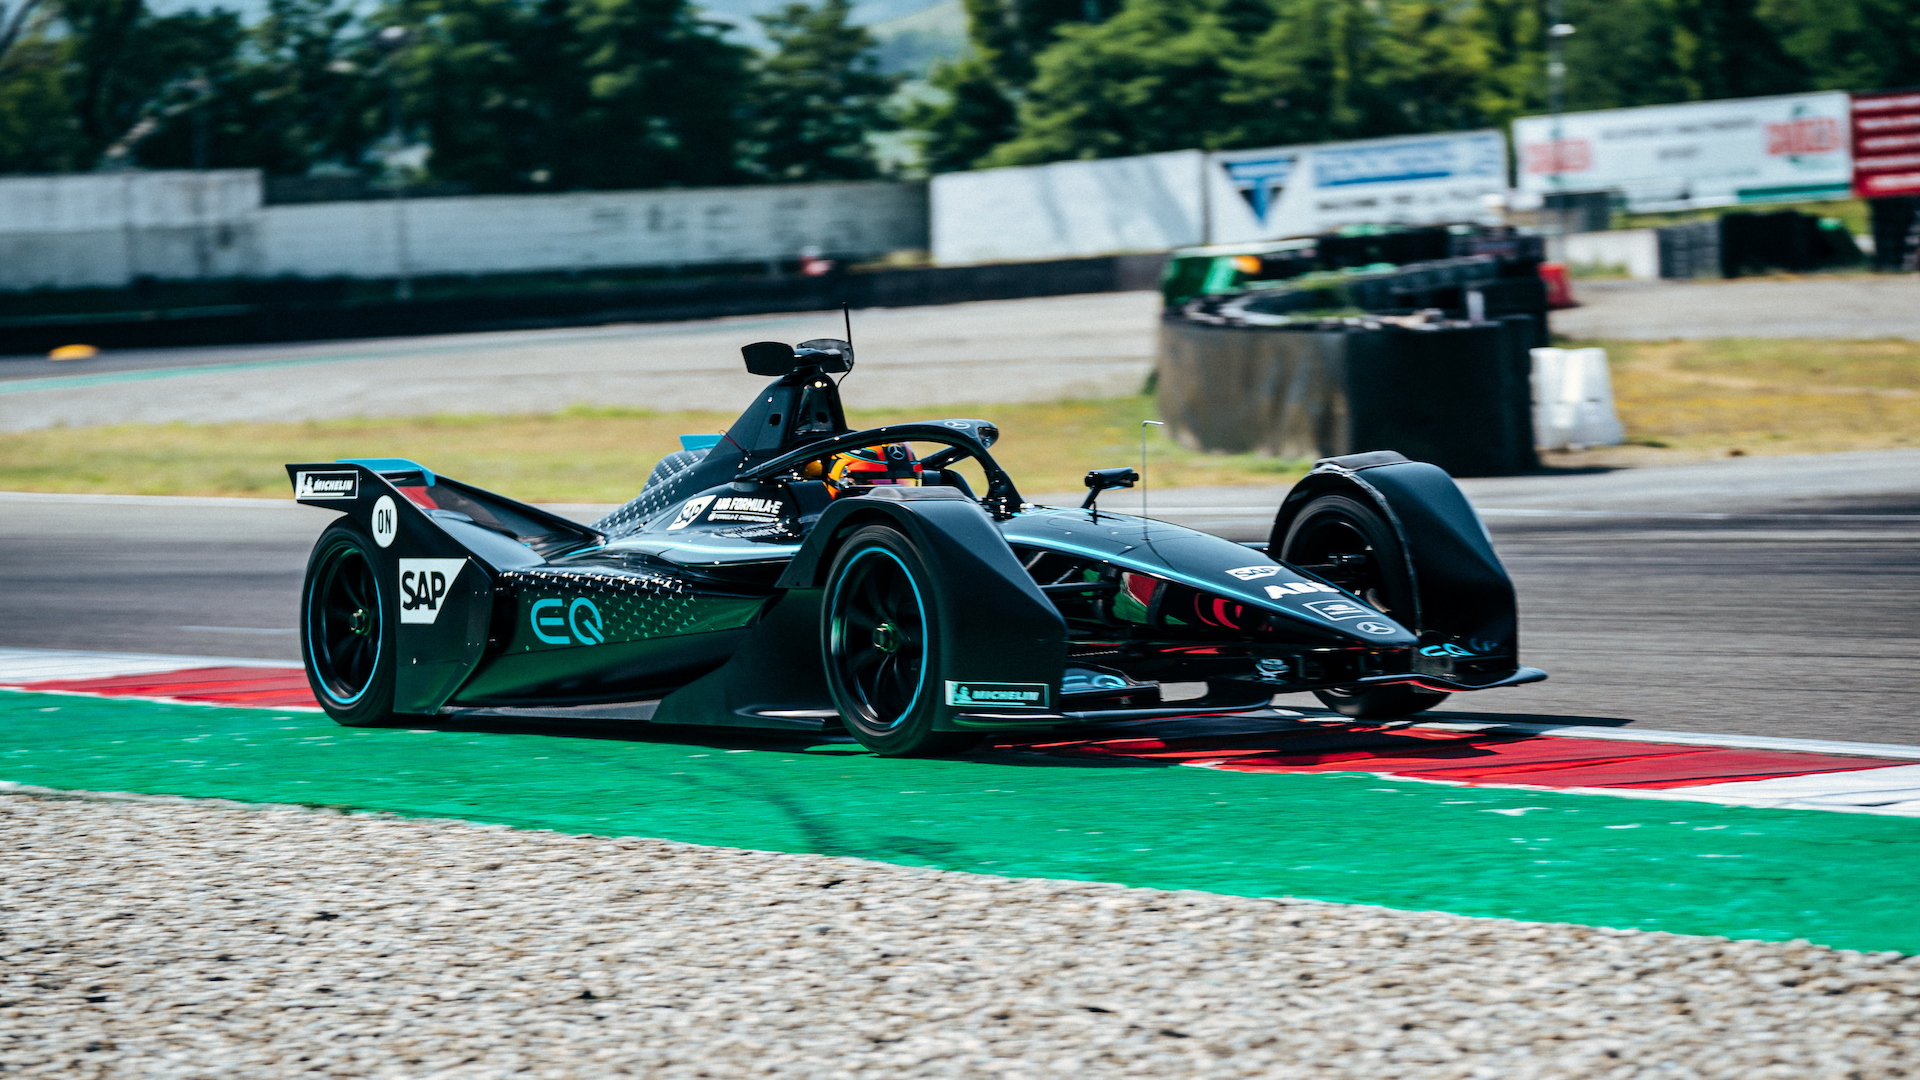 Mercedes-Benz EQ Silver Arrow 01 Formula E race car, 2019